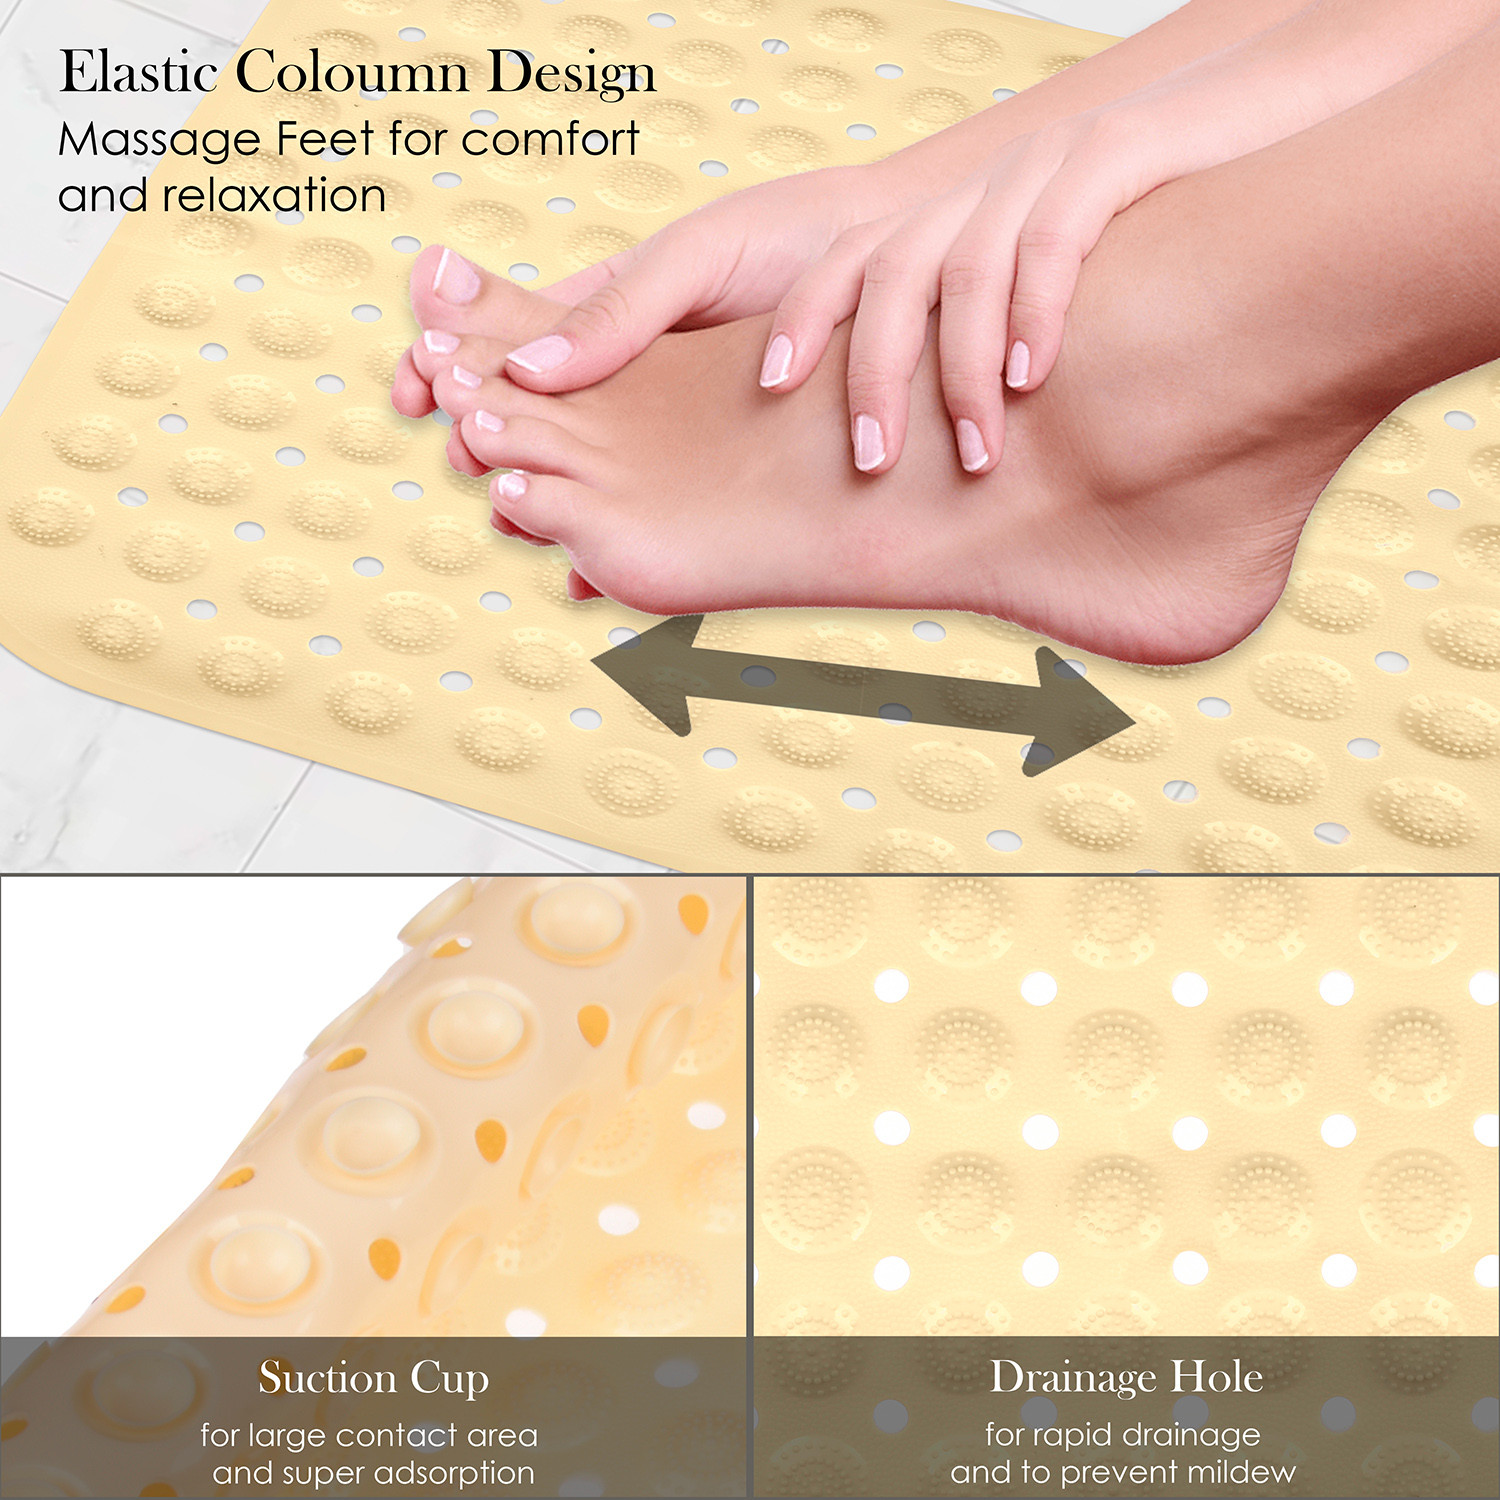 Kuber Industries Bath Mat | PVC Bathroom Mat | Shower Bath Mat | Square Bath Tub Mat | Foot Massager Mat | Anti-Skid Floor Mat | Shower Mat | Cream